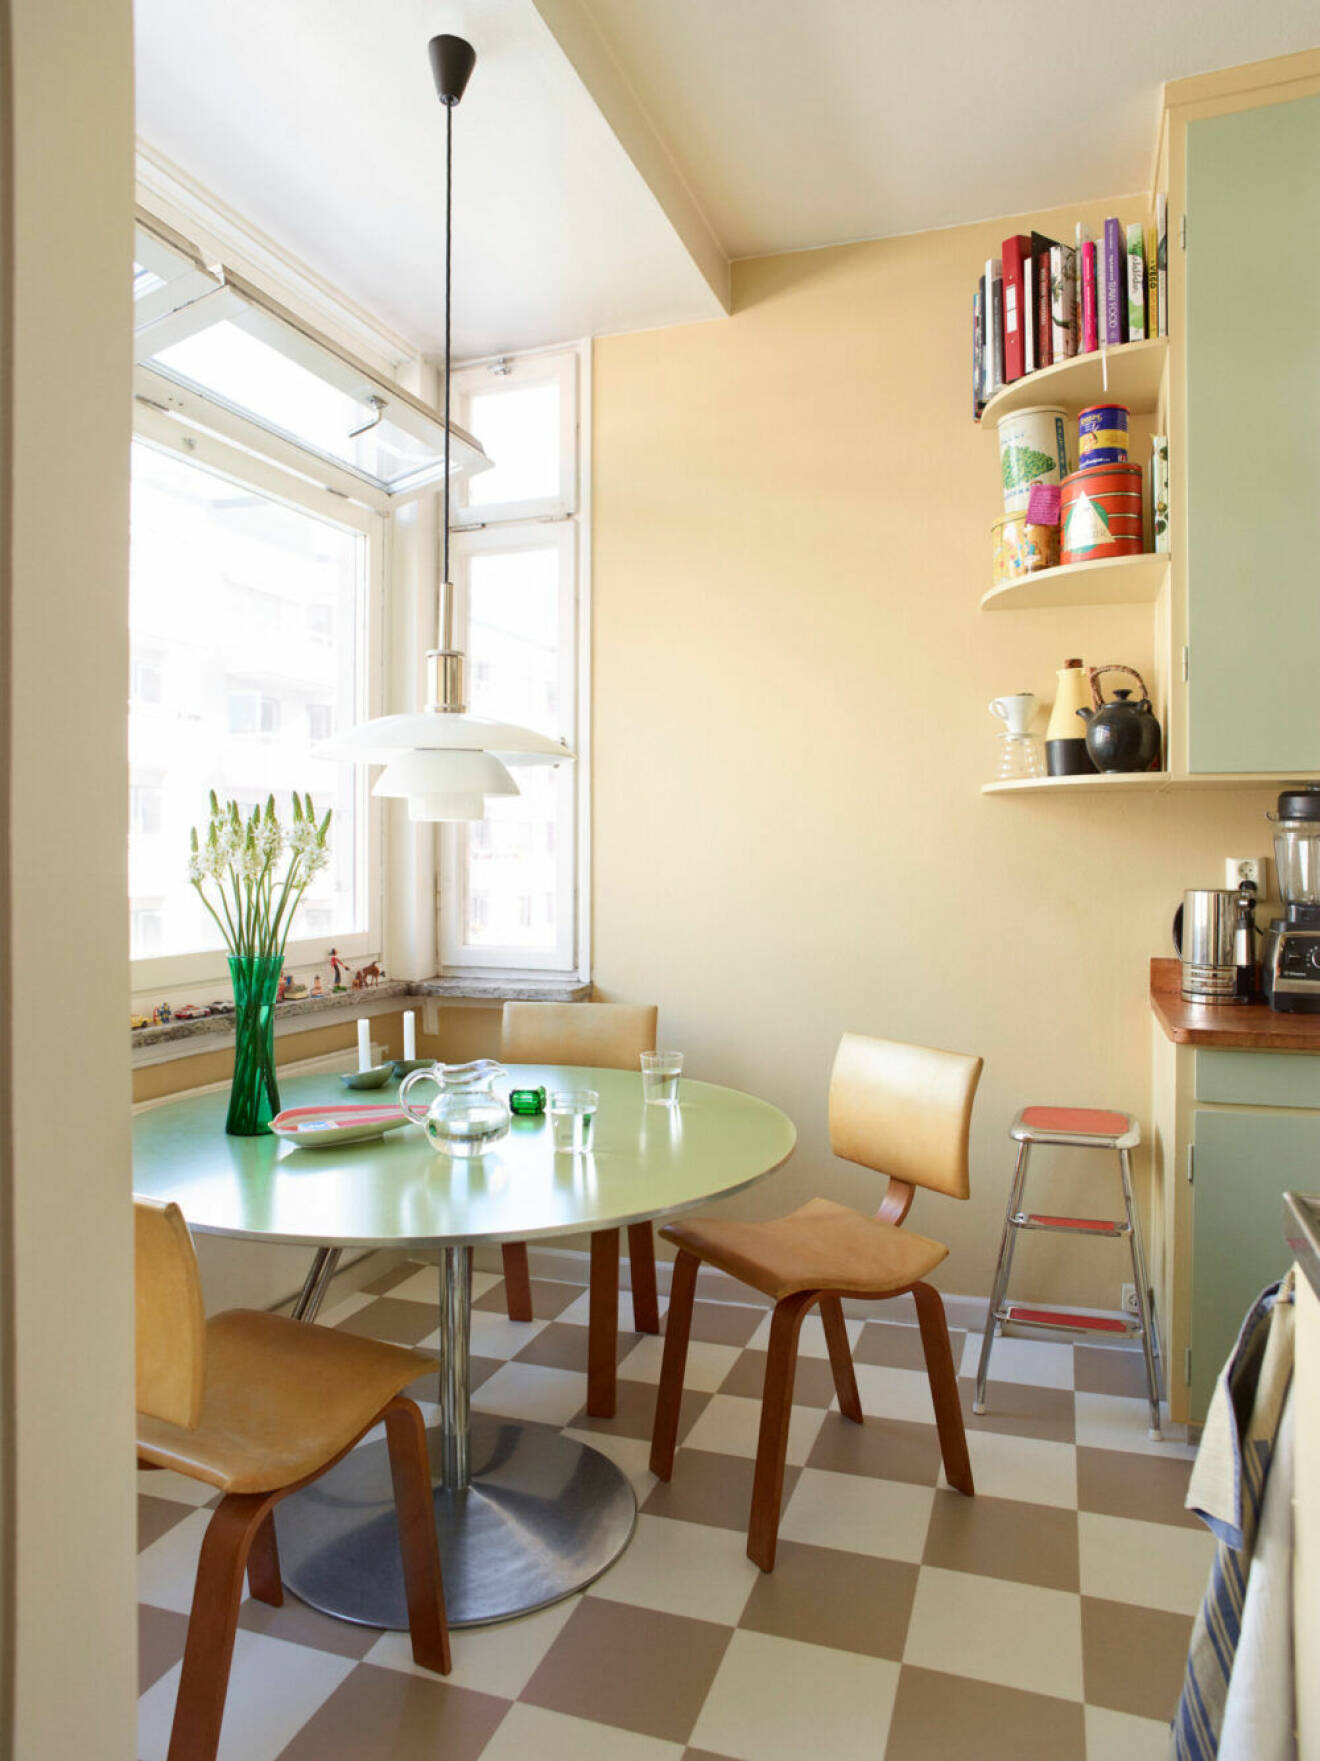 Mintgrönt kök med rutigt golv hos Ursula Wångander